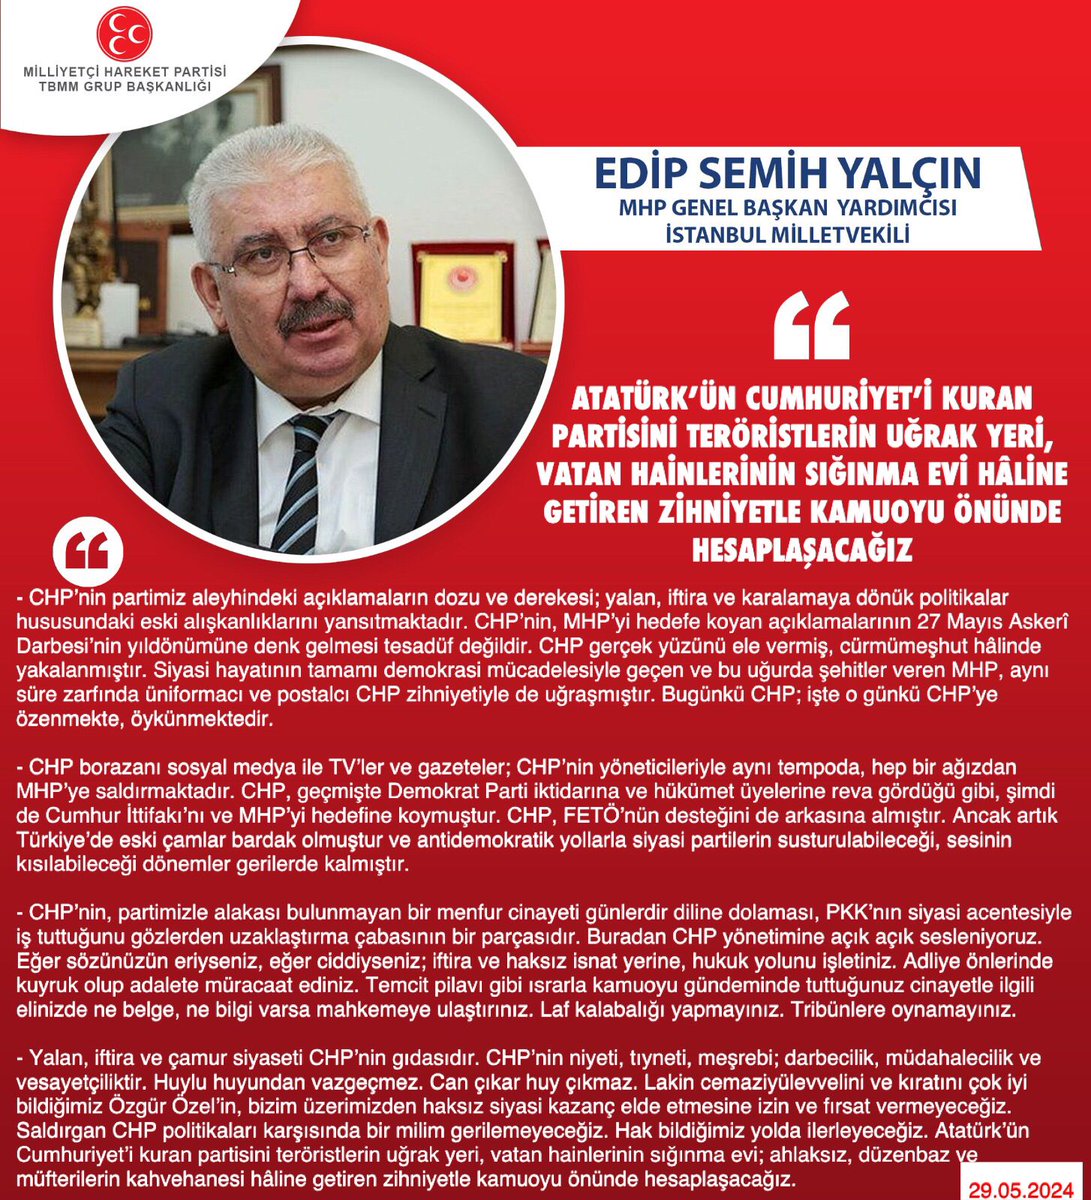 MHP Genel Başkan Yardımcısı ve İstanbul Milletvekilimiz Prof. Dr. E. Semih Yalçın @E_SemihYalcin: Atatürk’ün Cumhuriyet’i kuran partisini teröristlerin uğrak yeri, vatan hainlerinin sığınma evi hâline getiren zihniyetle kamuoyu önünde hesaplaşacağız mhphaber.com/?p=10523